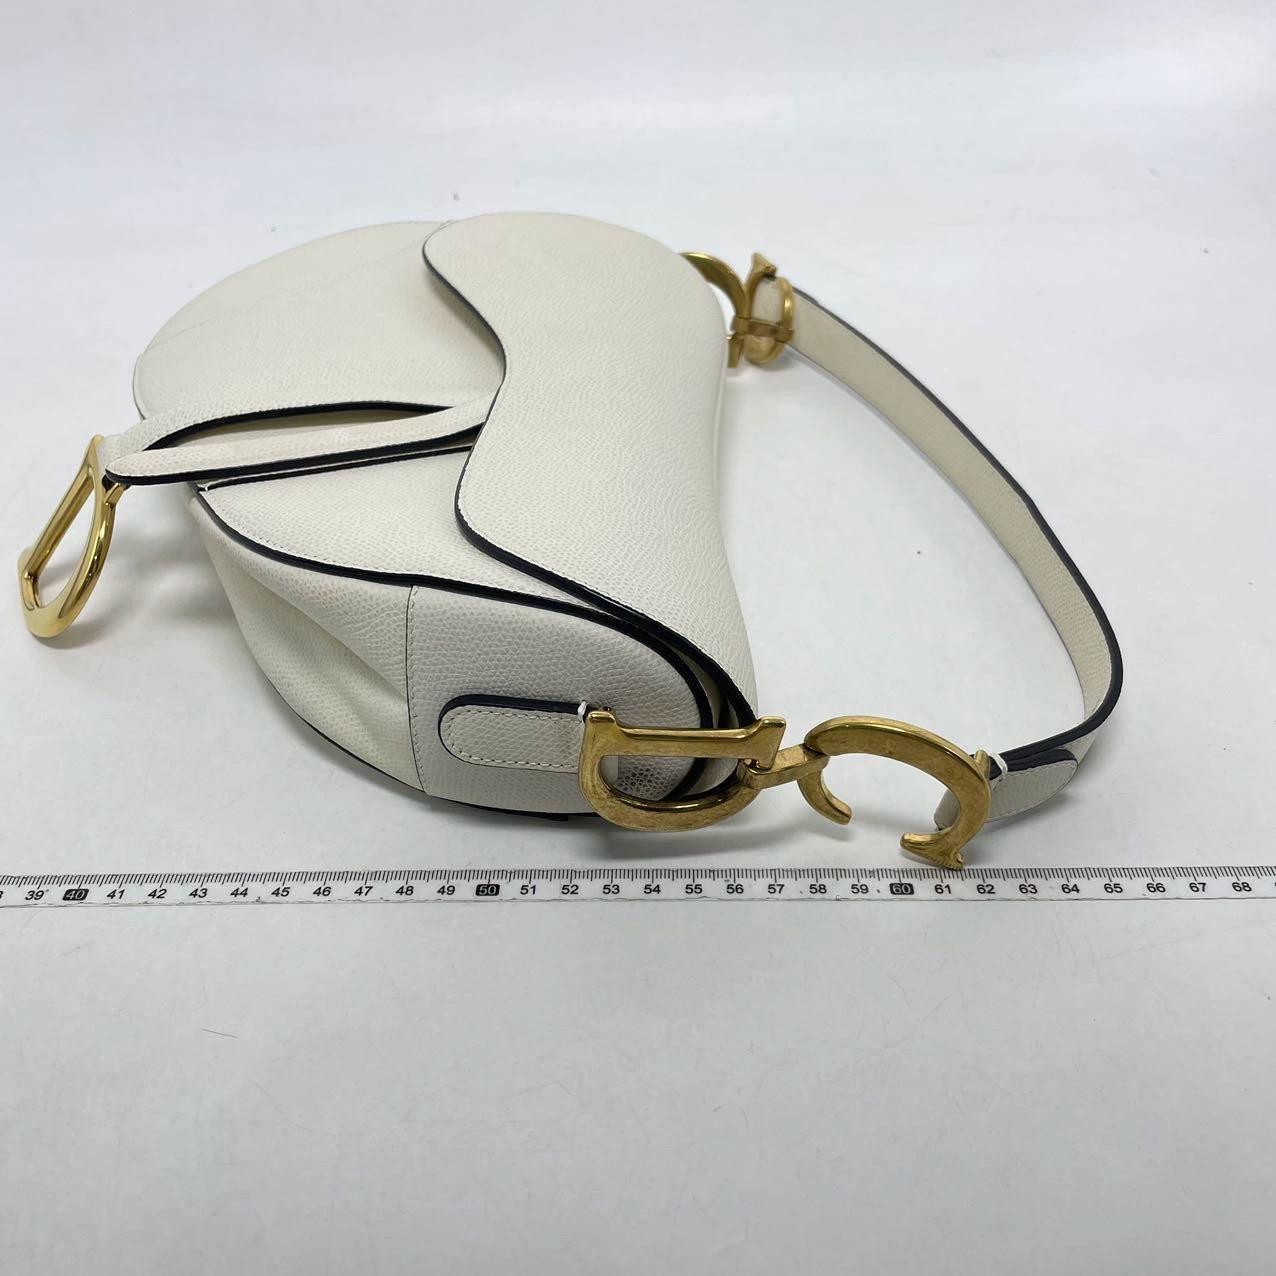 2018 Sac Saddle Dior, réalisé en cuir de veau grainé blanc, le modèle légendaire est proposé en taille moyenne, présente un rabat magnétique et la signature CD en finition or antique de part et d'autre de la lanière. La sacoche peut être portée à la